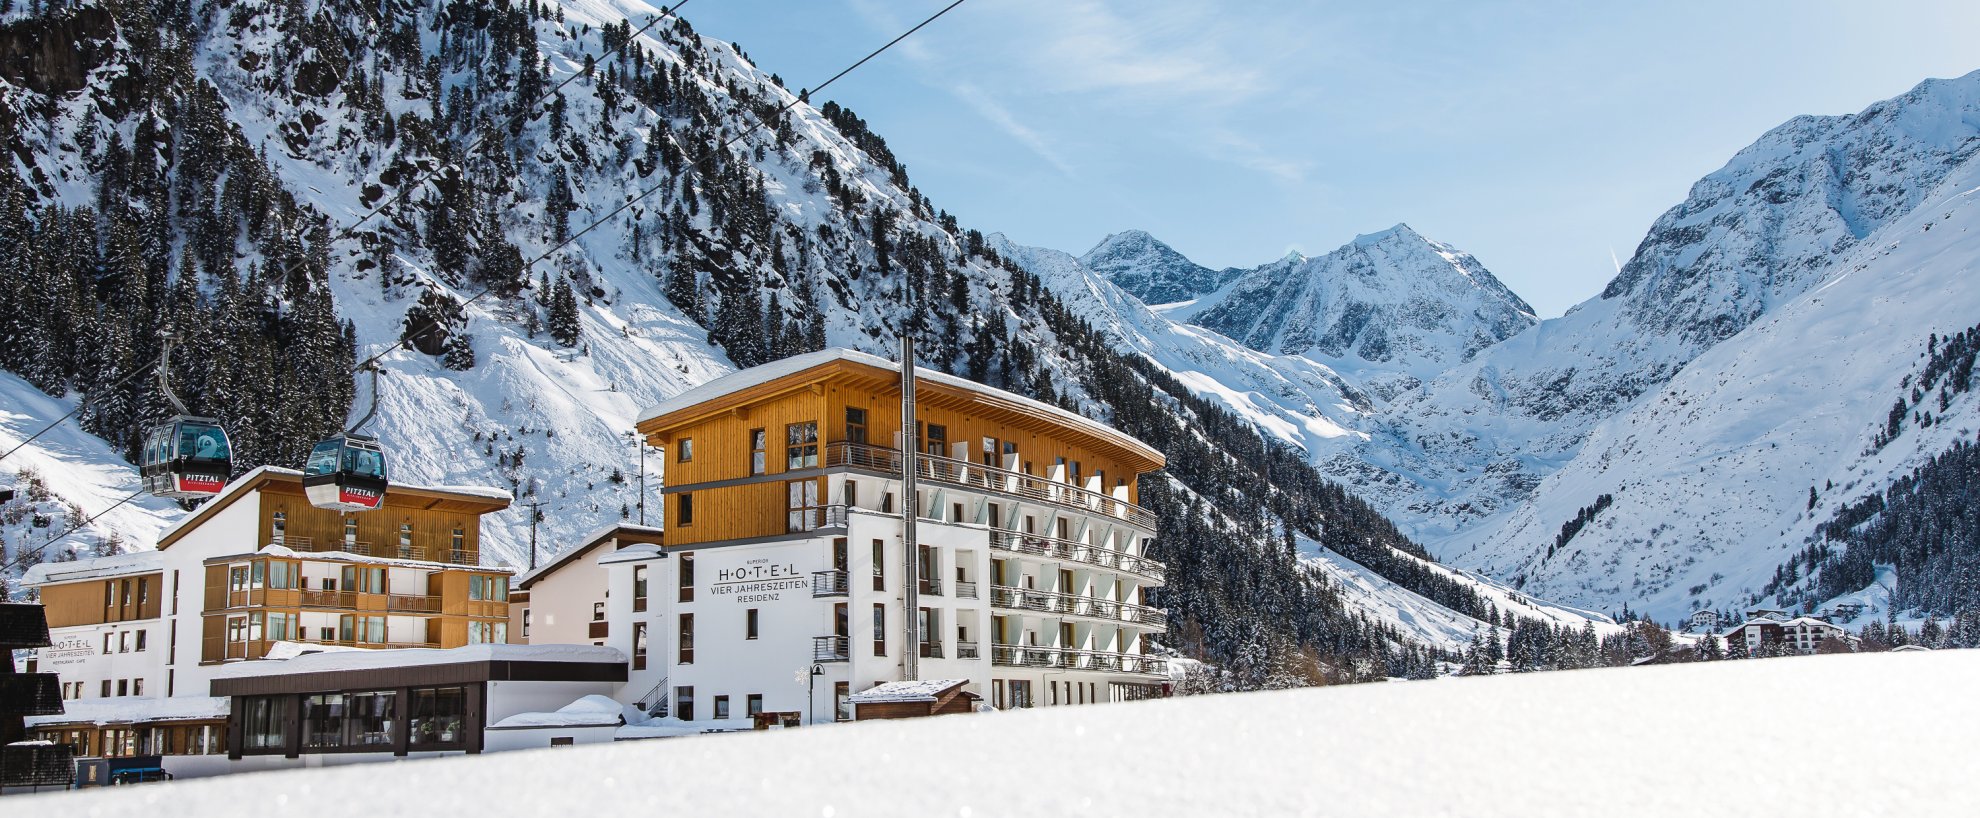 Yoga Urlaub Österreich Tirol Pitztal Hotel Vier Jahreszeiten Panorama Hotelanlage Berge Schnee 